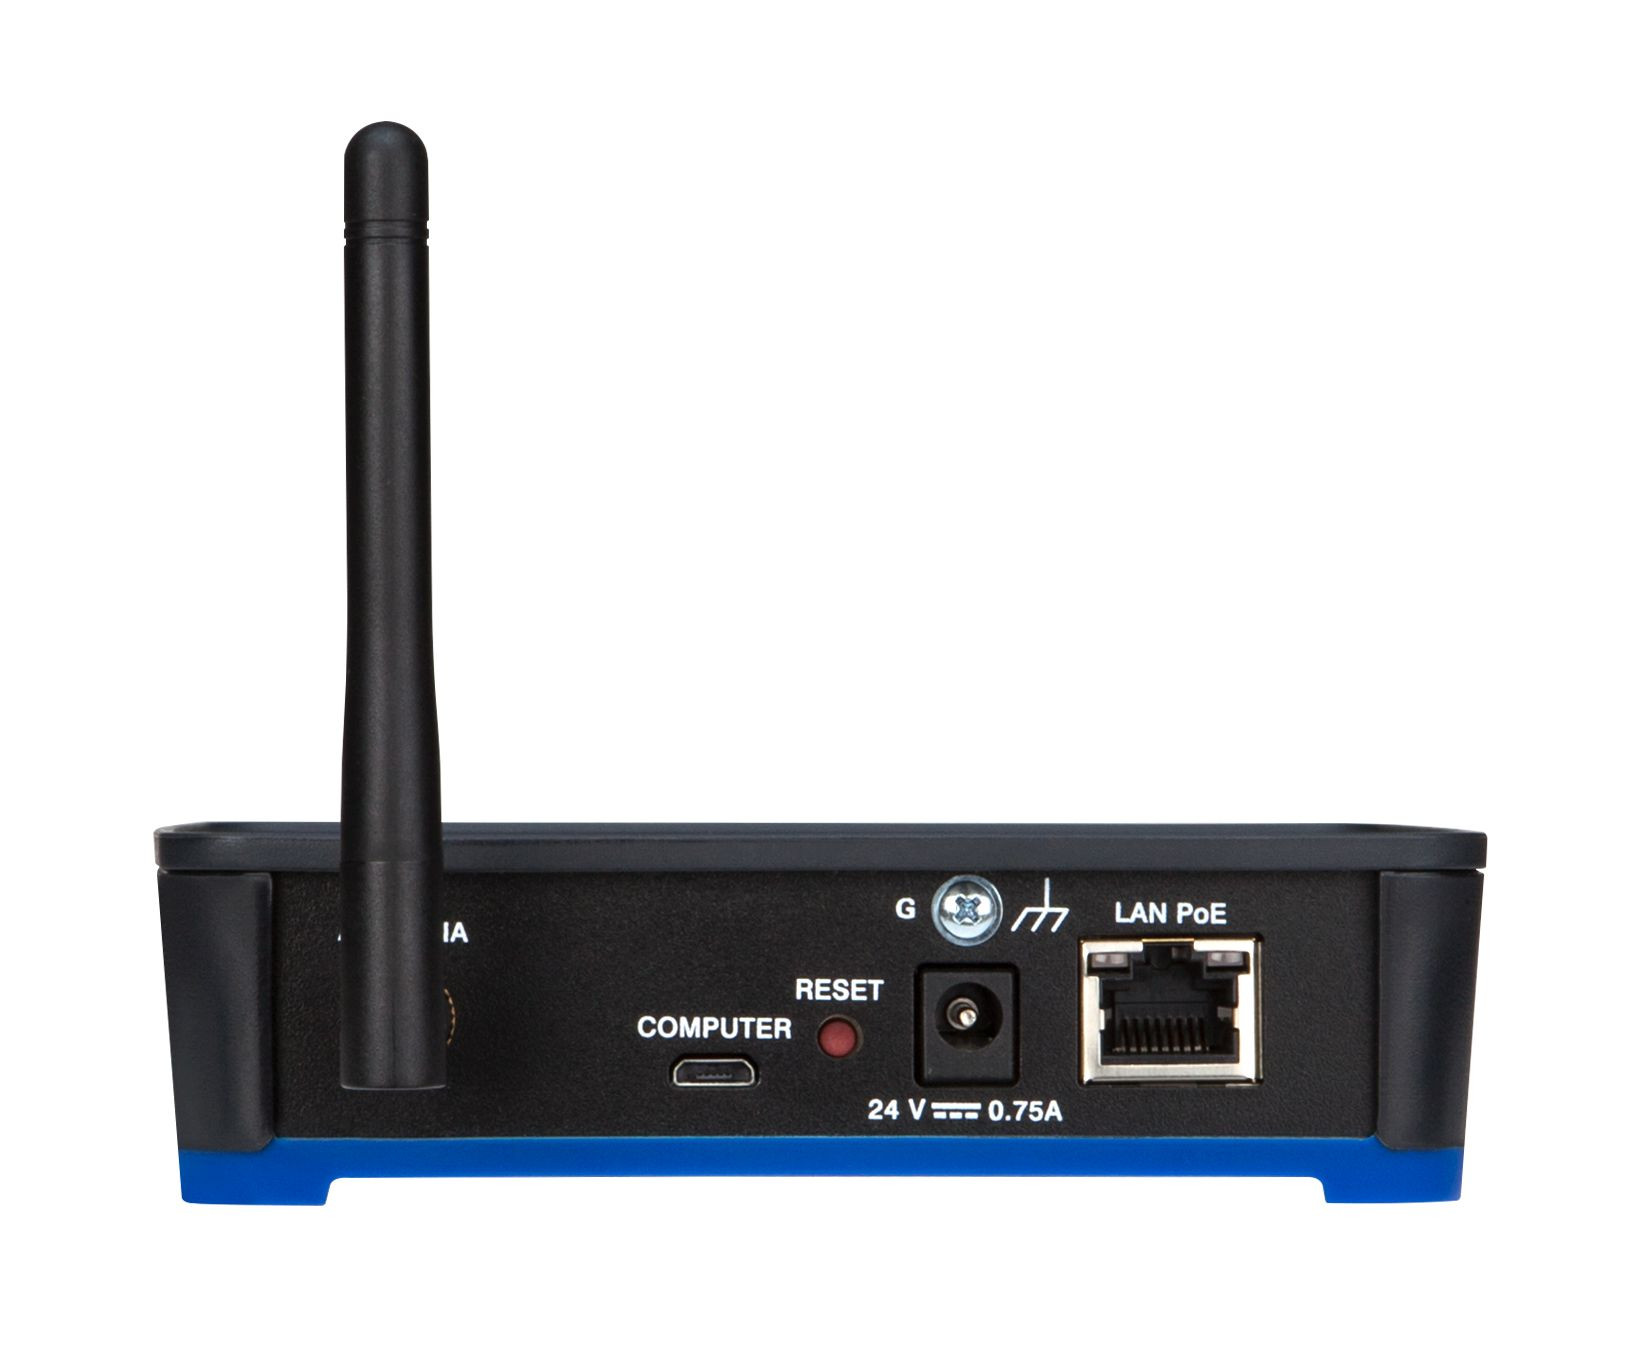 Crestron-CENI-GWEXER-infiNET-EX-Netzwerk-und-ER-Wireless-Gateway